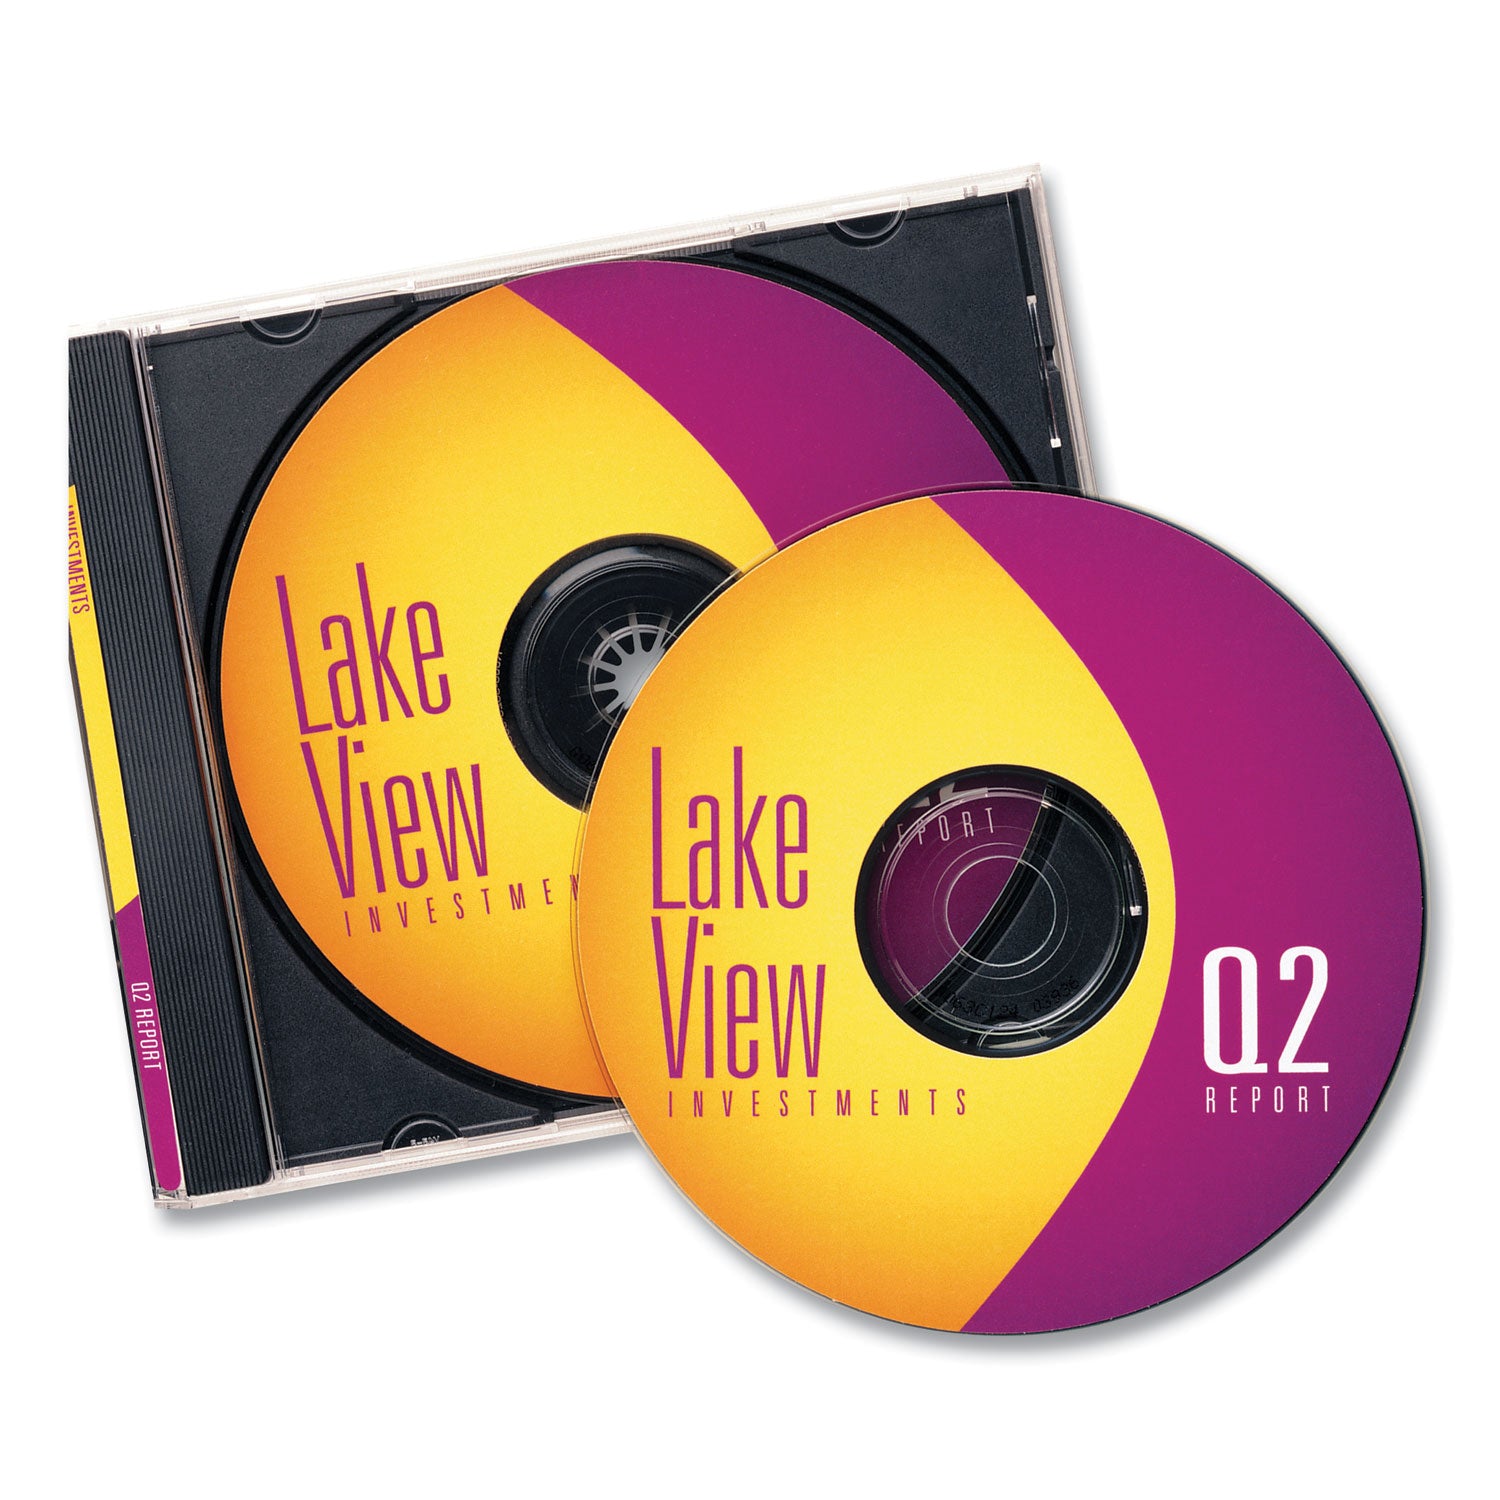 Inkjet CD Labels, Matte White, 100/Pack - 